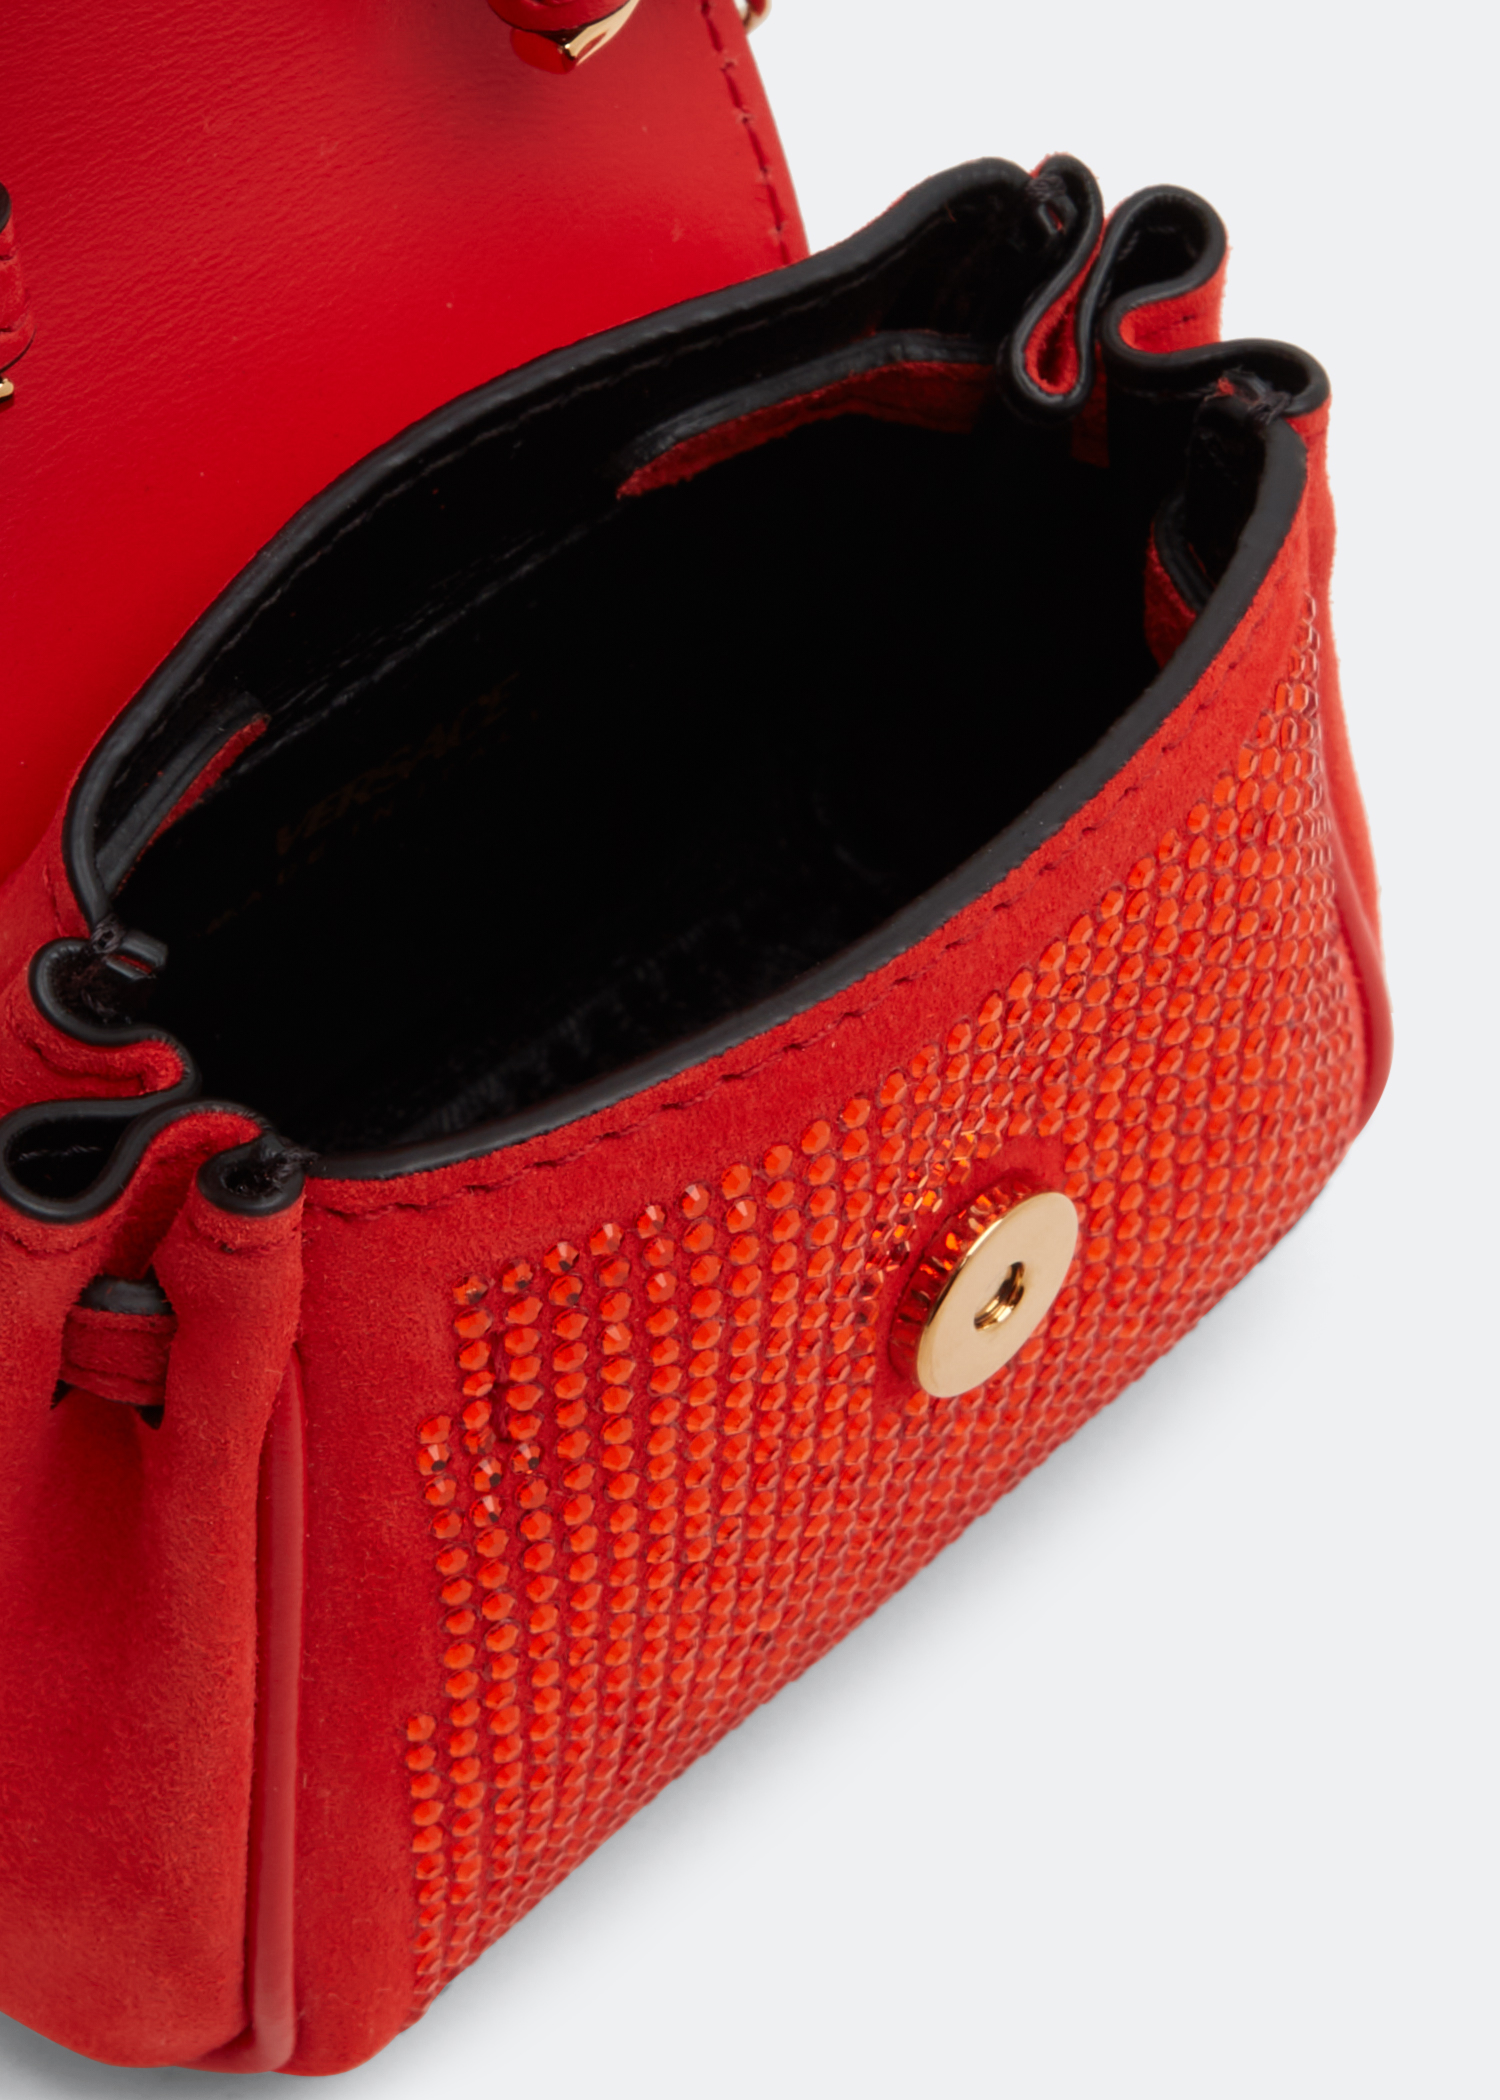 Versace La Medusa Studded Micro Bag for Women